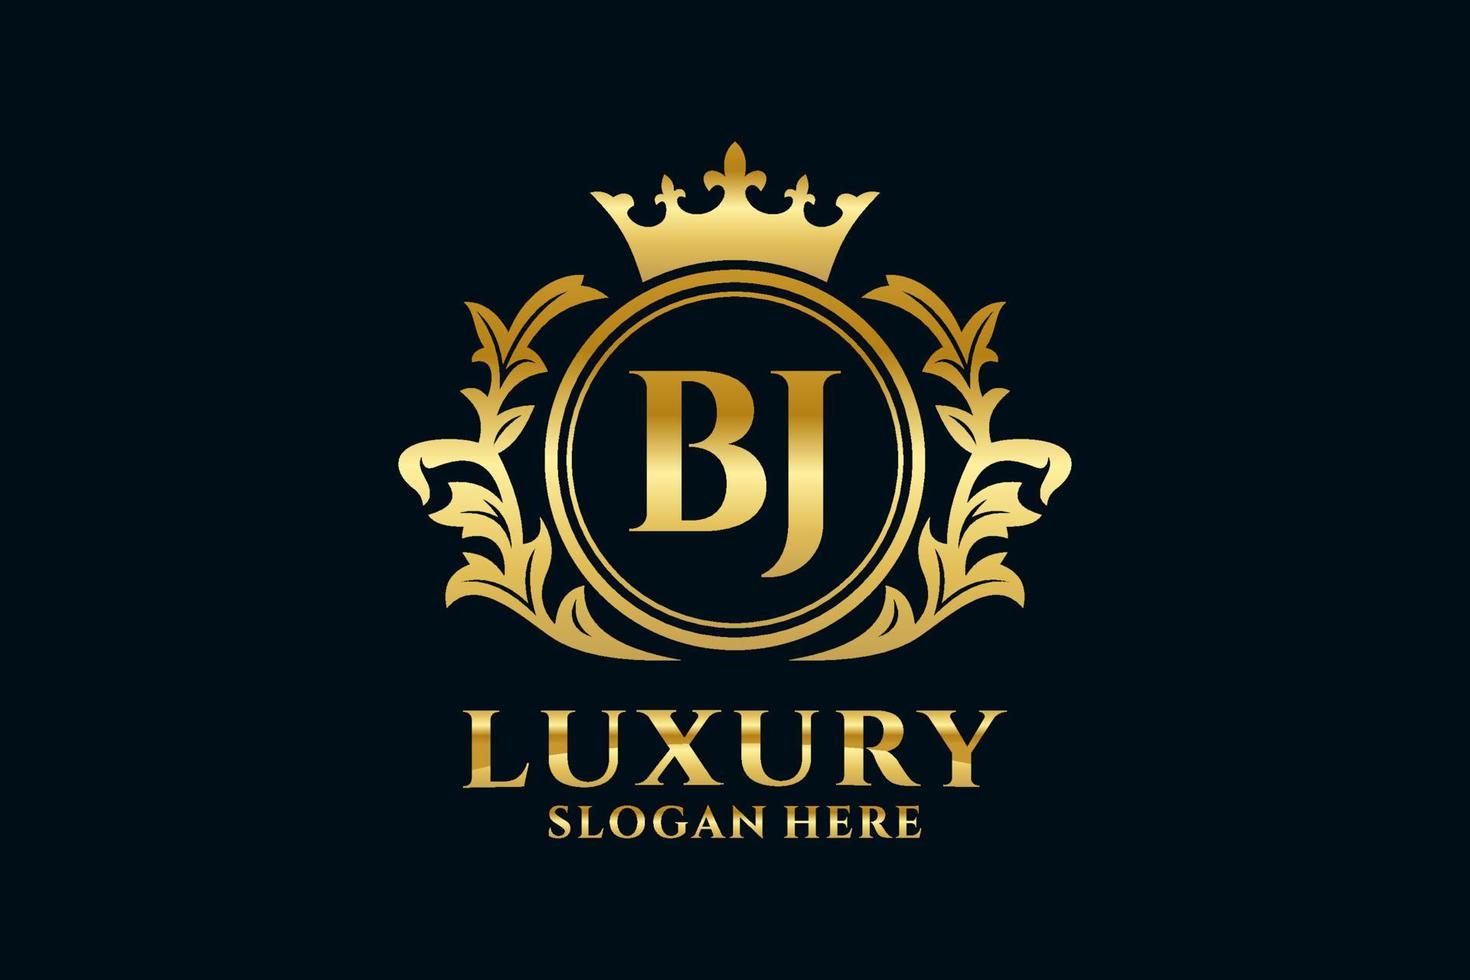 königliche luxus-logo-vorlage mit anfänglichem bj-buchstaben in vektorkunst für luxuriöse branding-projekte und andere vektorillustrationen. vektor